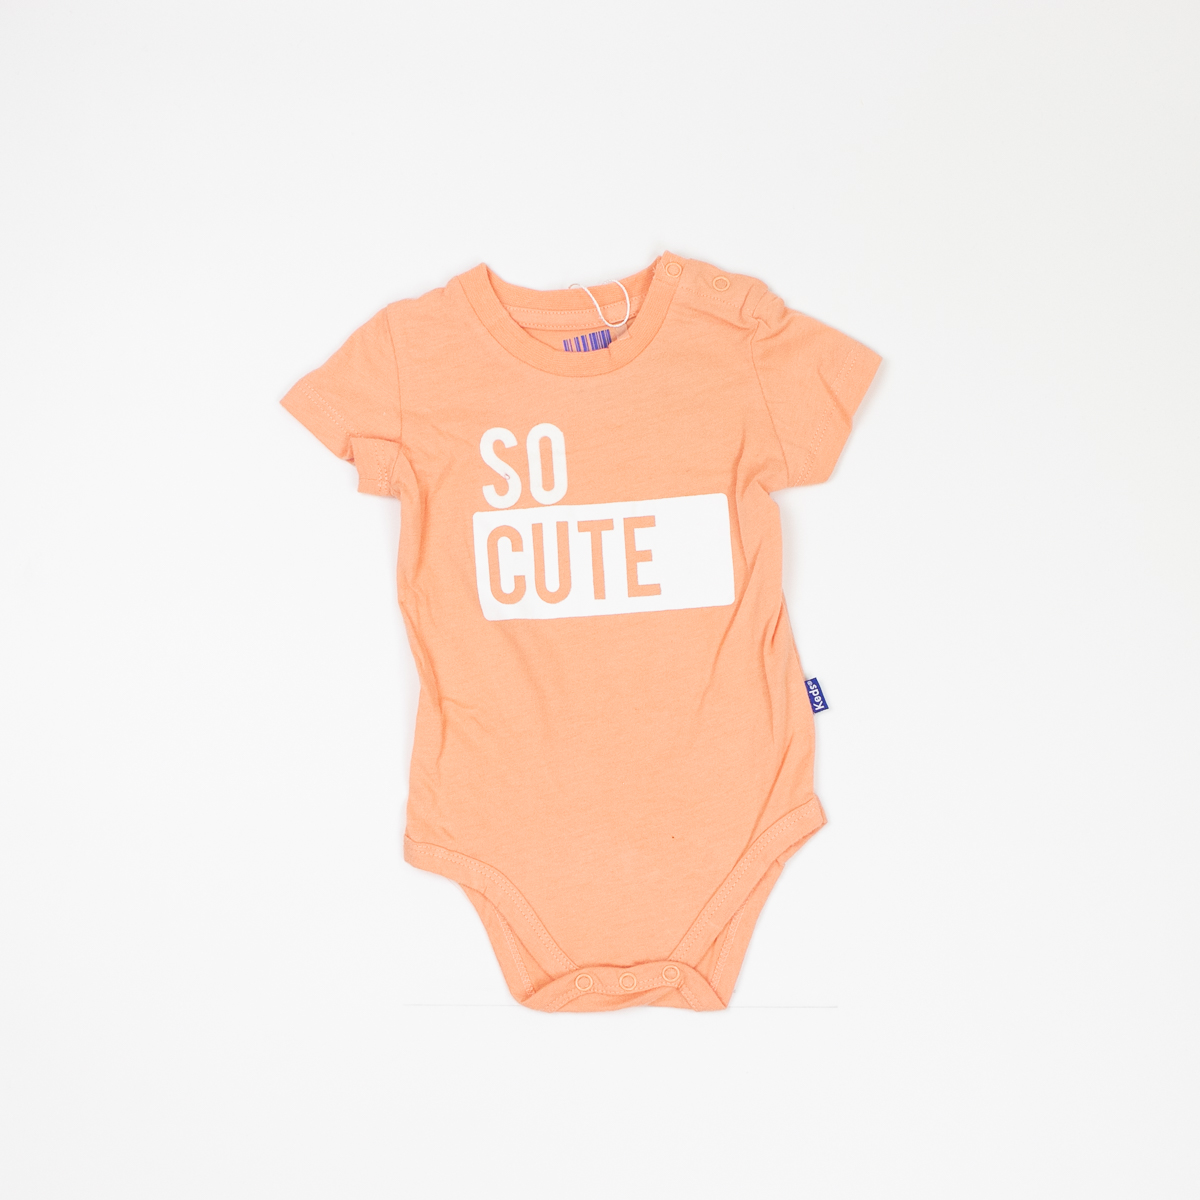 בגדי גוף   שרוול קצר לתינוקות בנים  בצבעים סגול בהיר וכתום בהיר